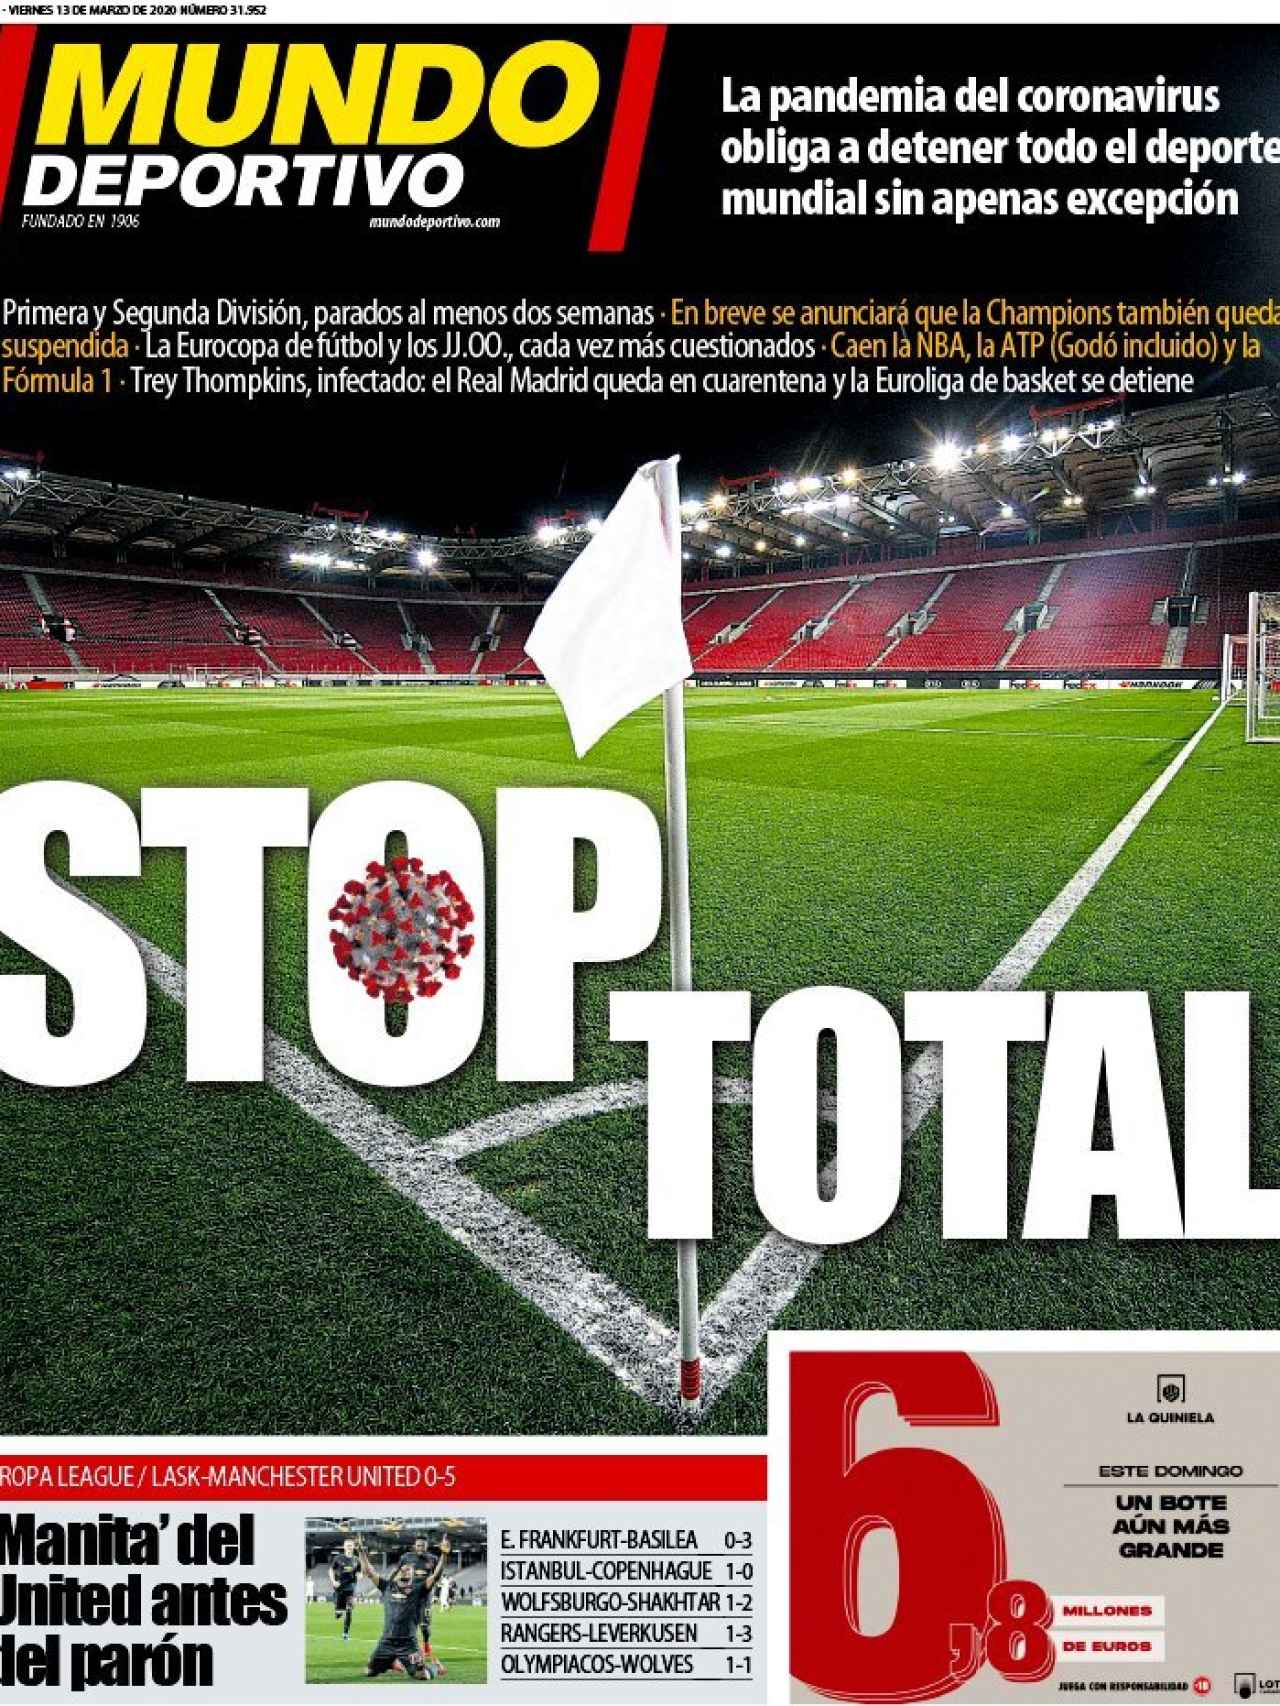 La portada del diario Mundo Deportivo (13/03/2020)